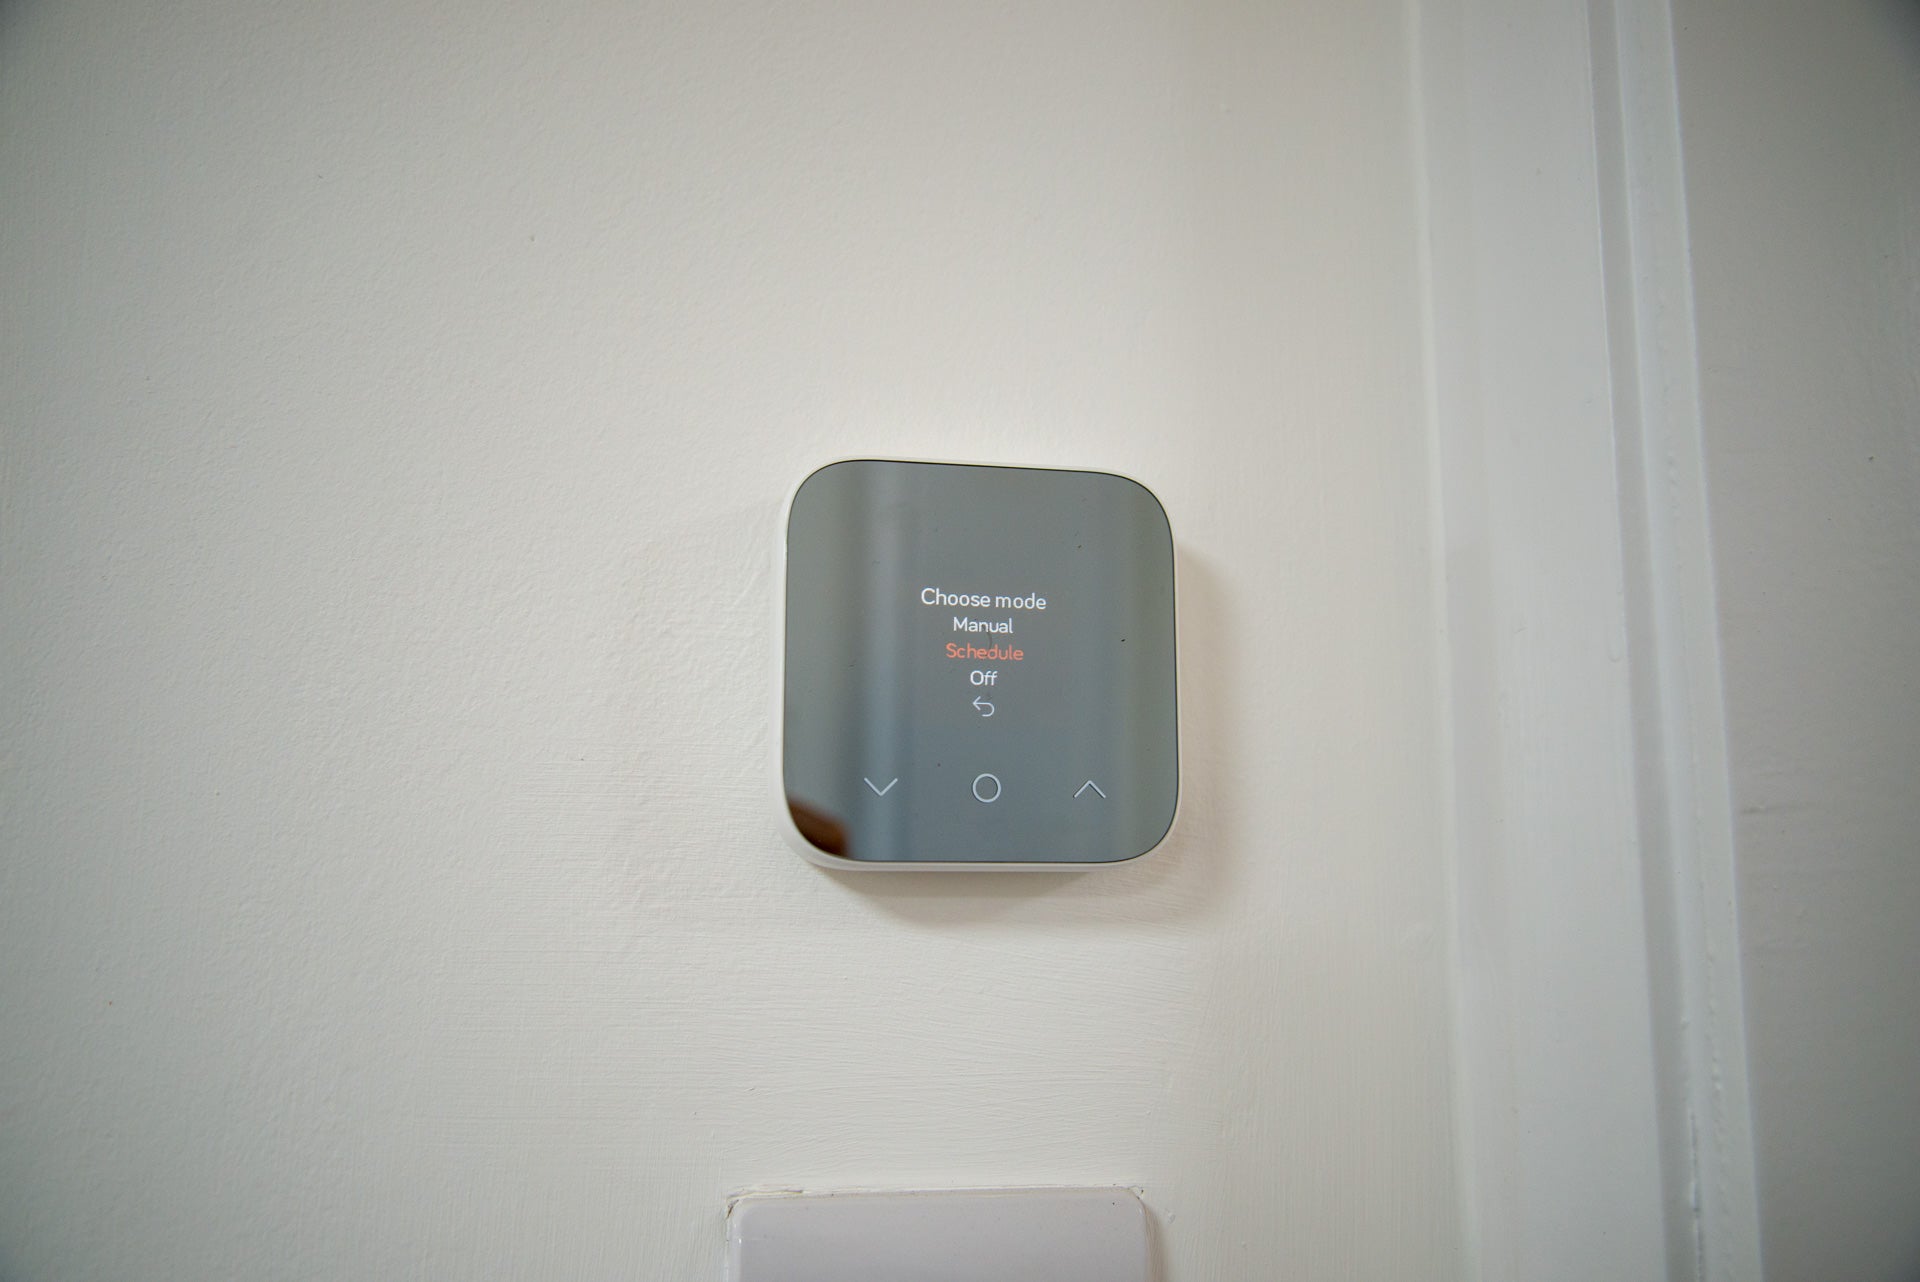 Hive Thermostat Mini mode settings